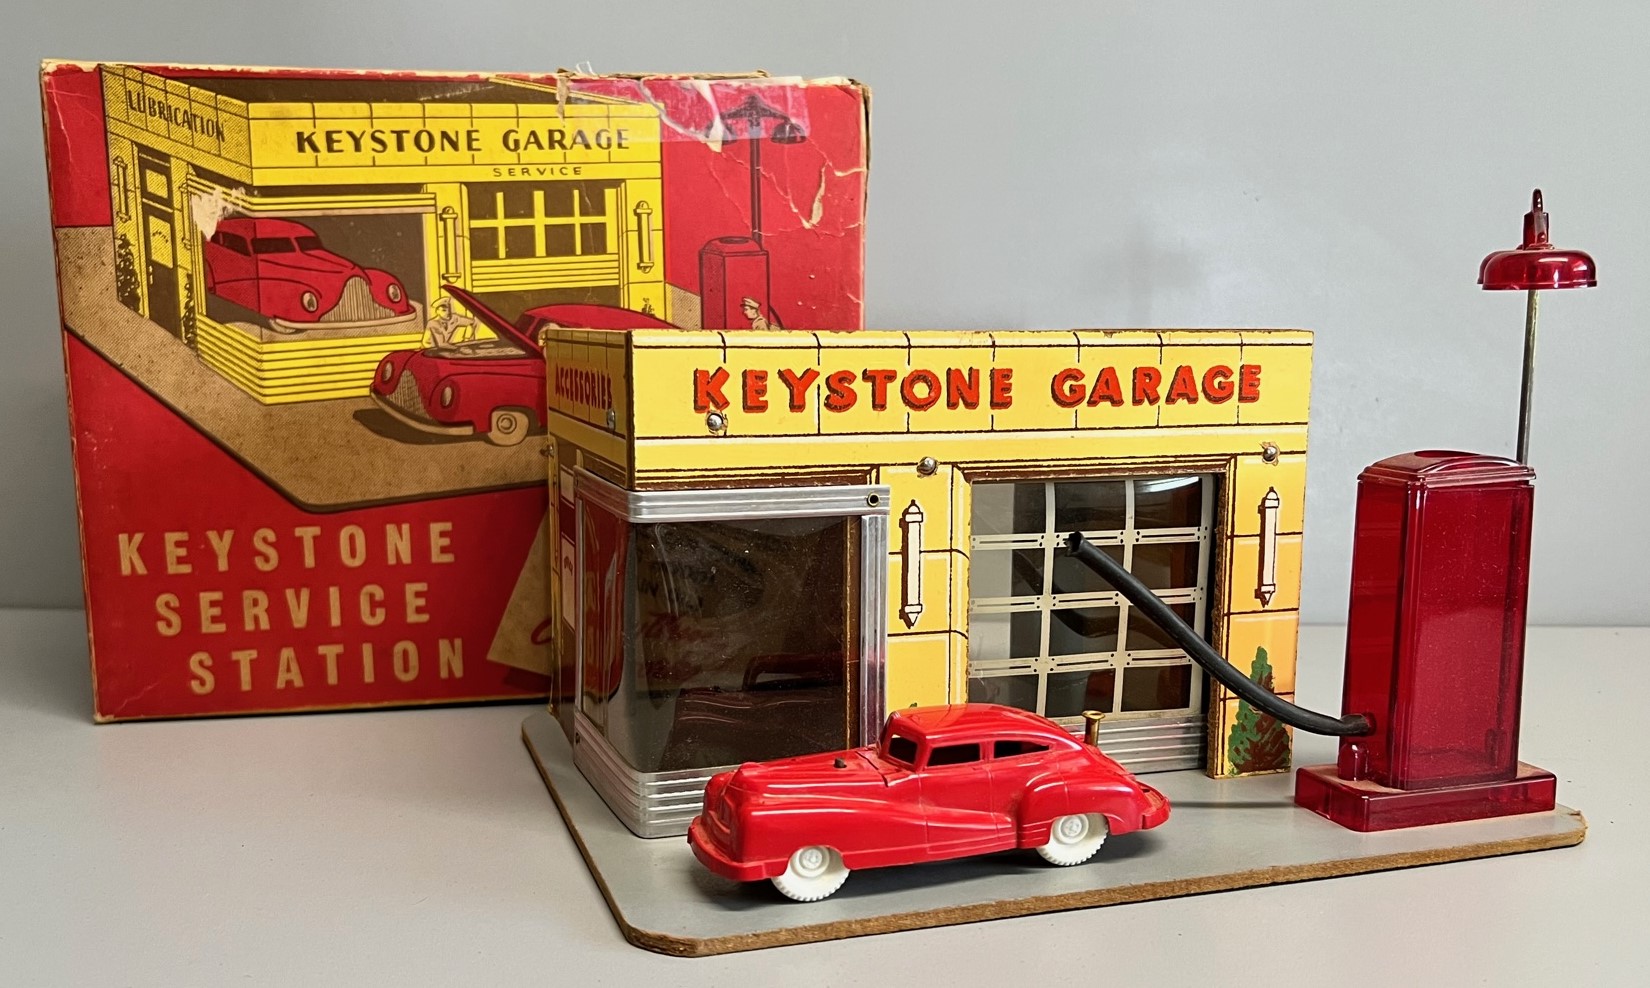 Keystone Garage #152